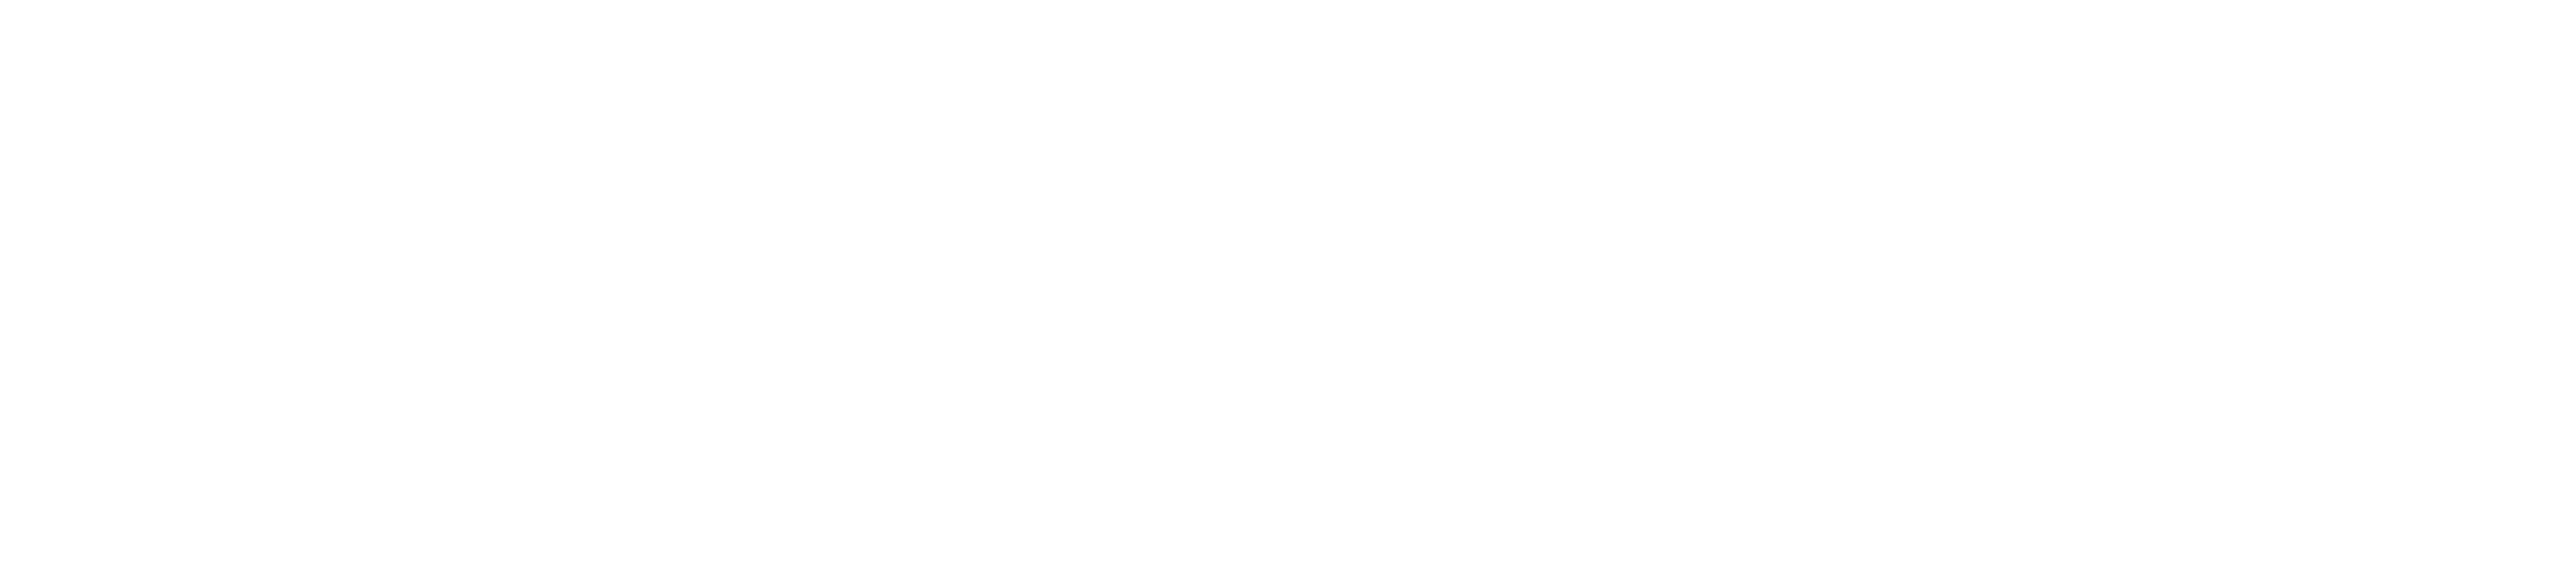 Tonica, LLC